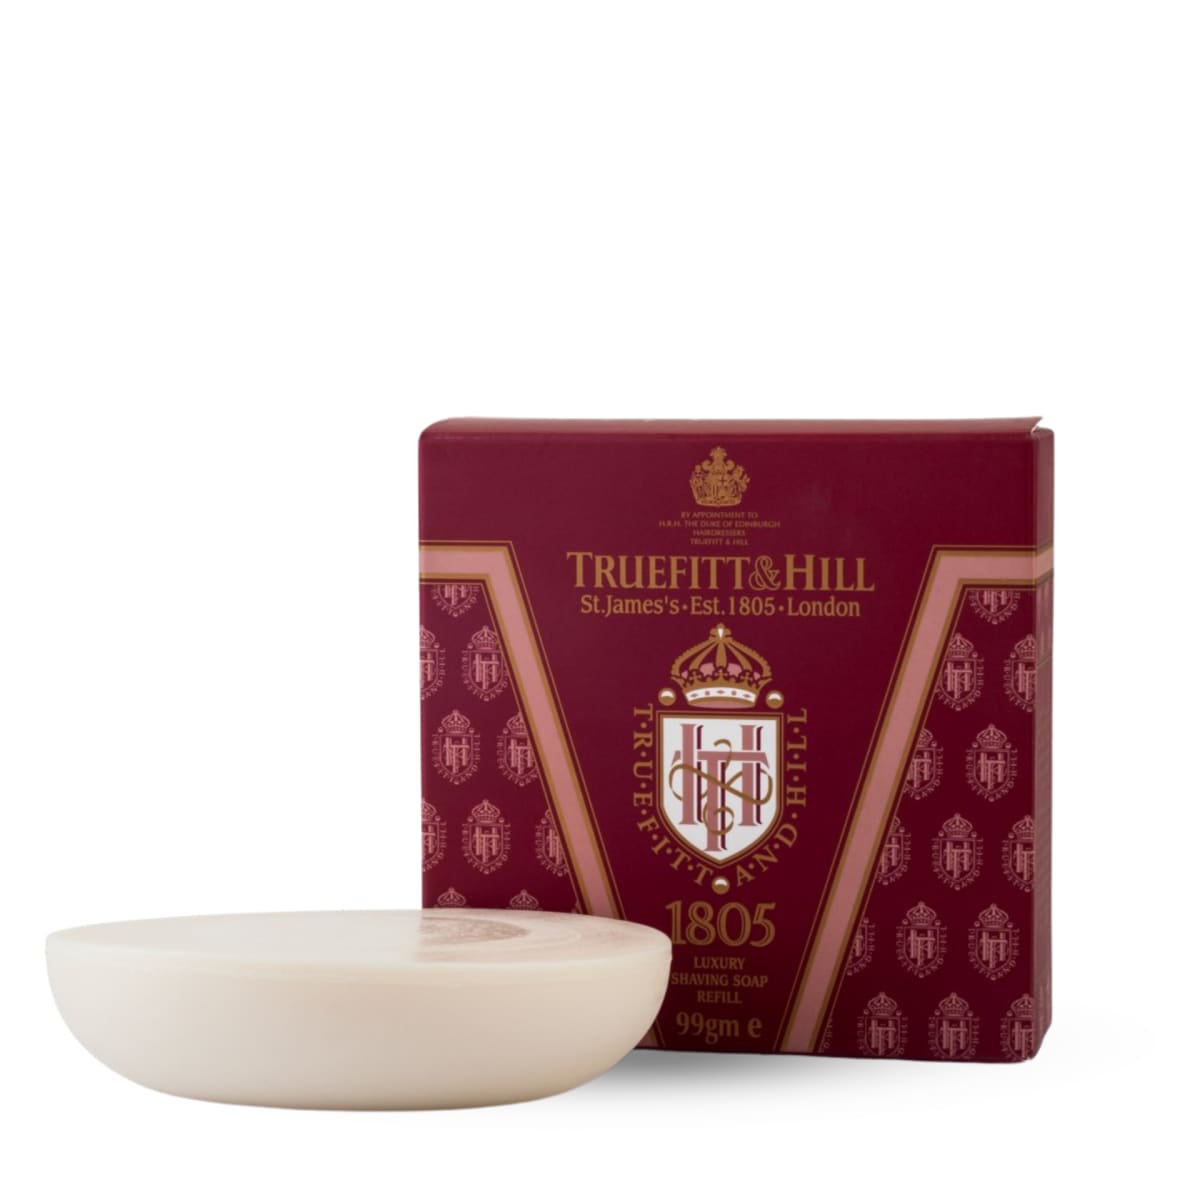 Truefitt & Hill 1805 Luxury Shaving Soap Refill